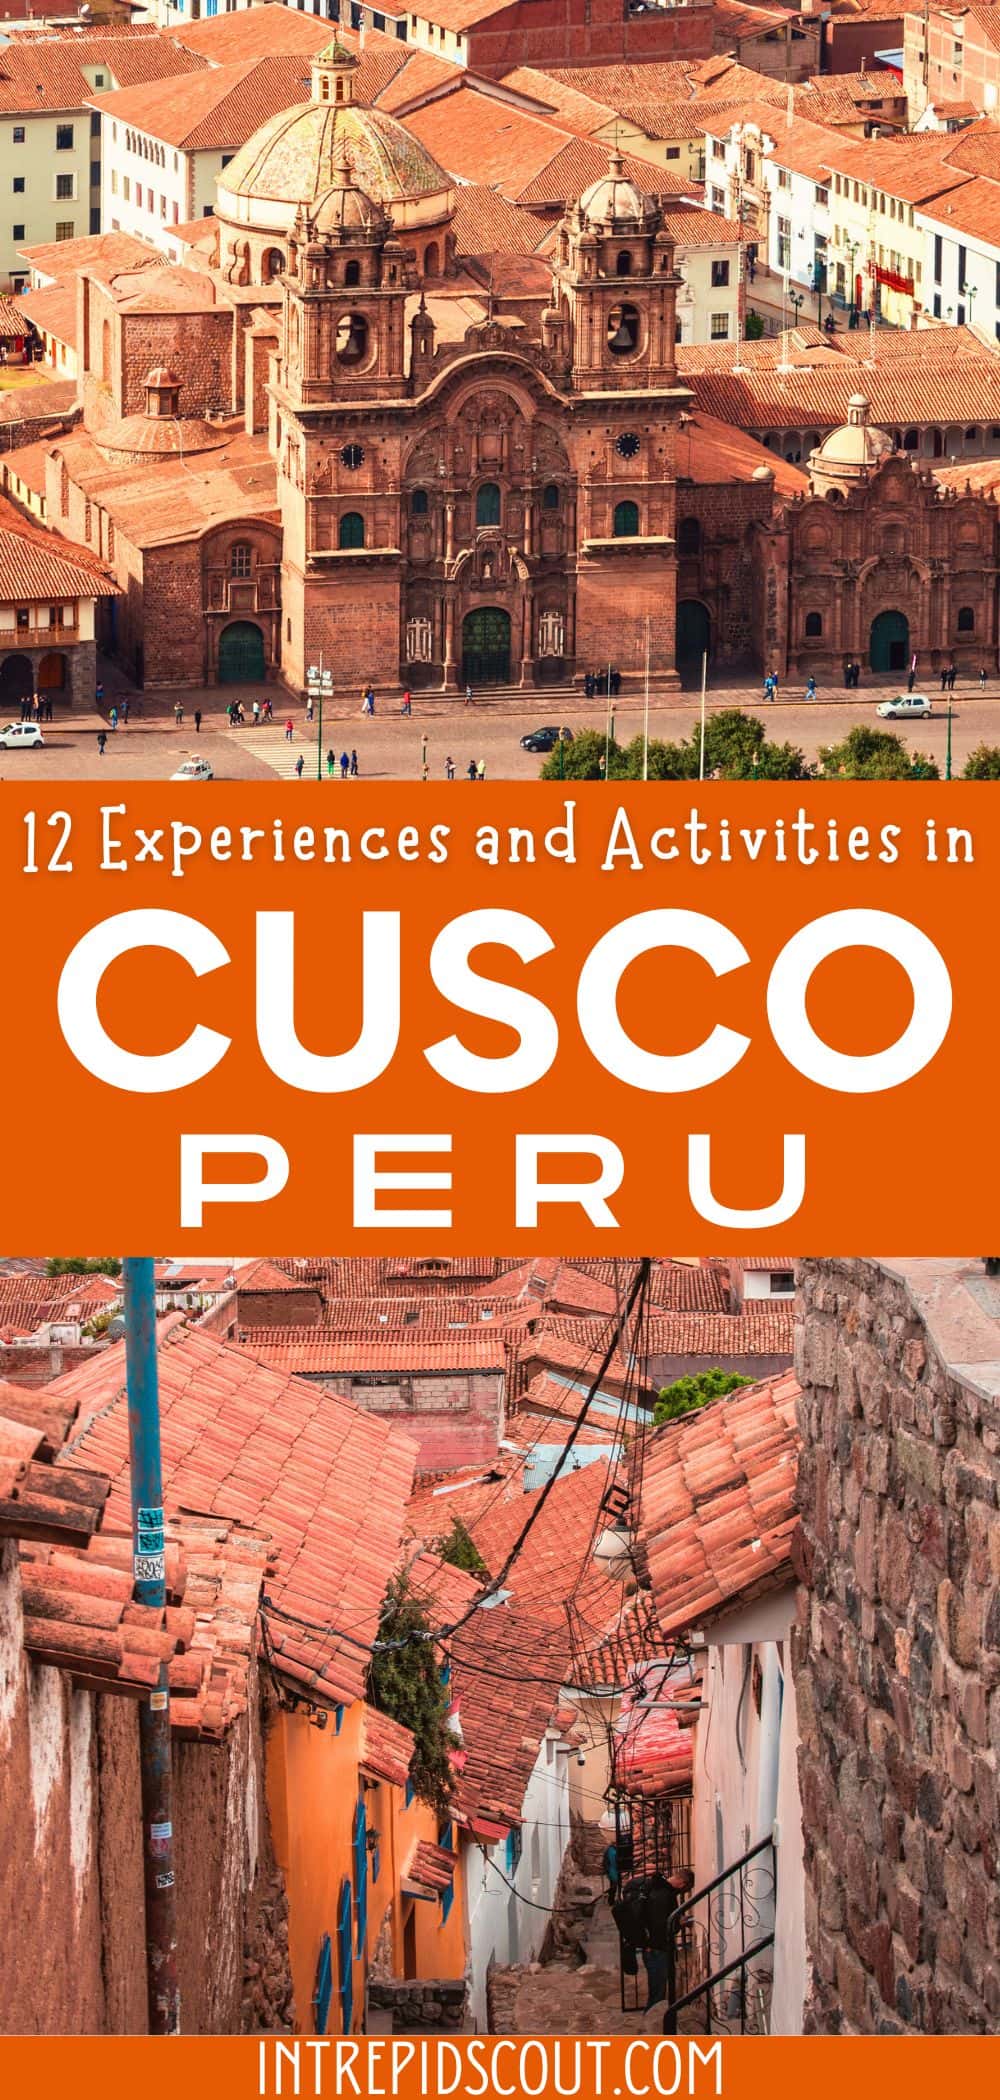 Activities in Cusco